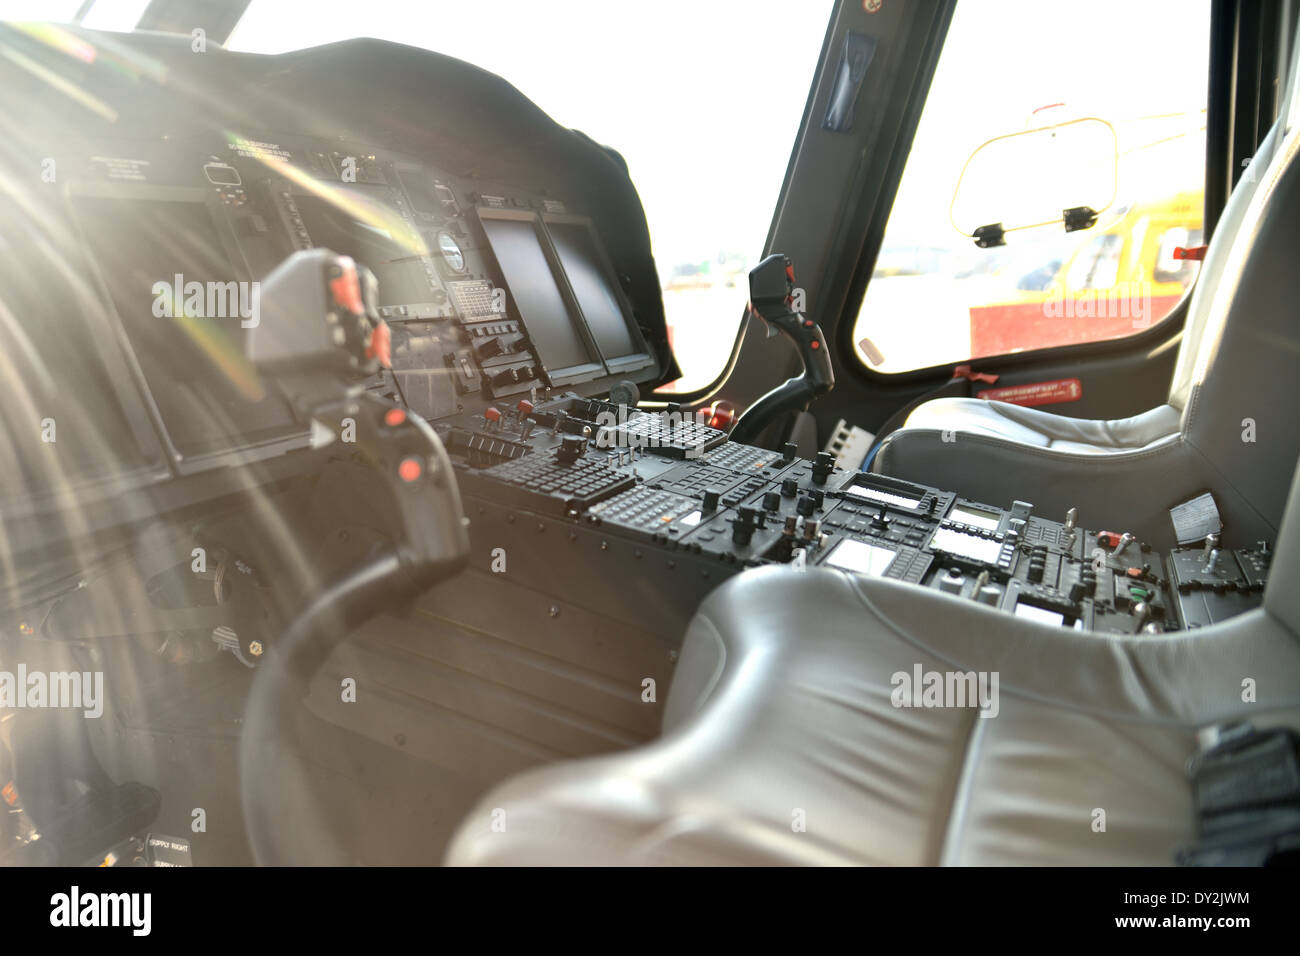 Agusta Westland aw139 (hh-139a), cockpit, au cours fidae 2014 Banque D'Images